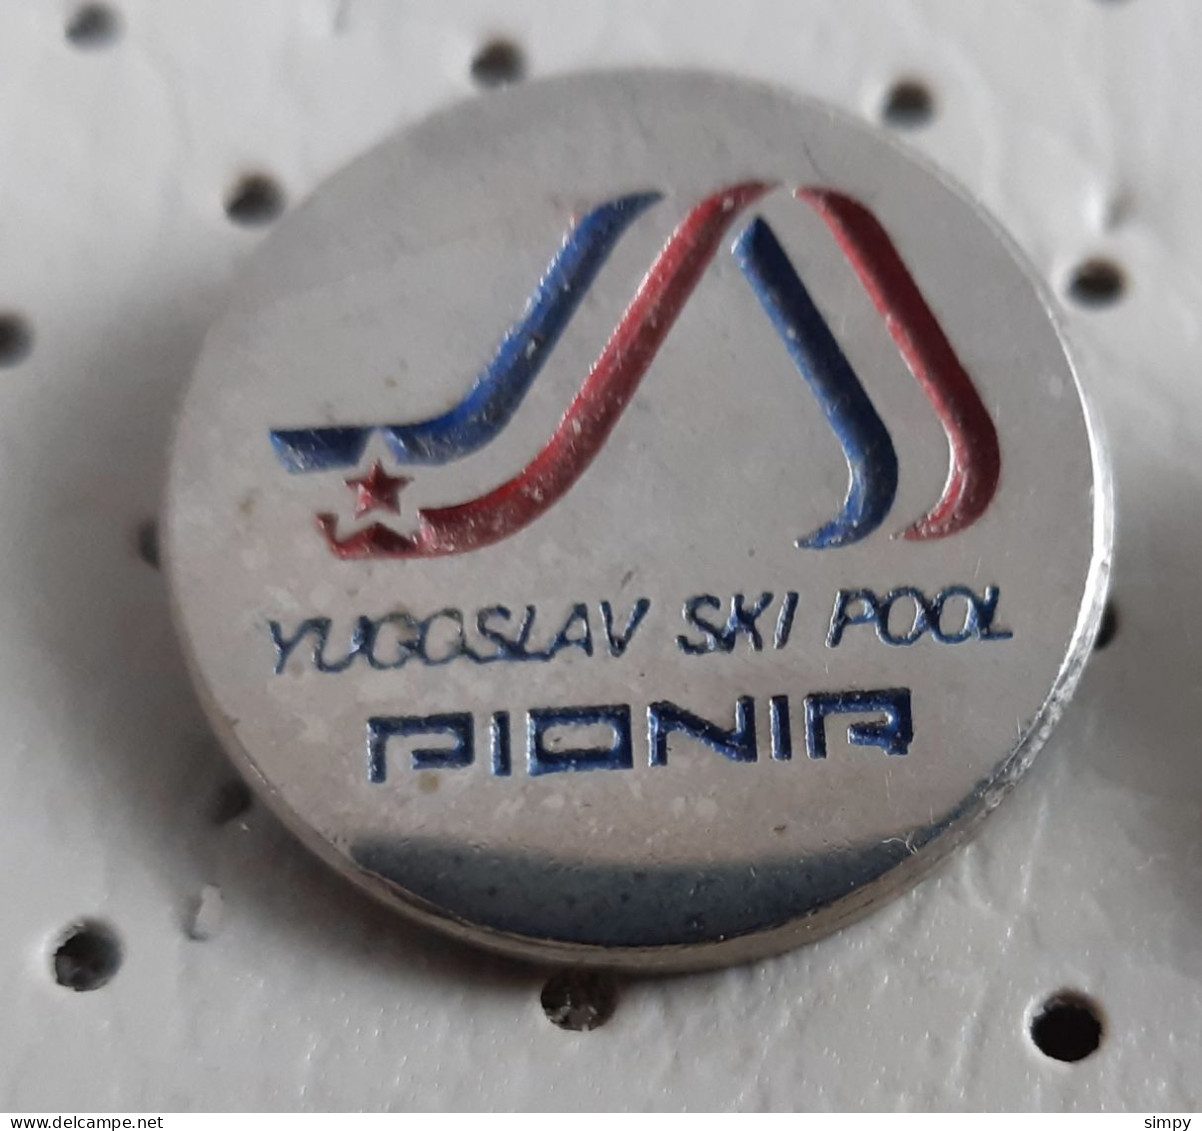 Yugoslav Ski Pool Pionir Novo Mesto Skiing Skier Skii Skiing Slovenia Ex Yugoslavia Pin - Winter Sports